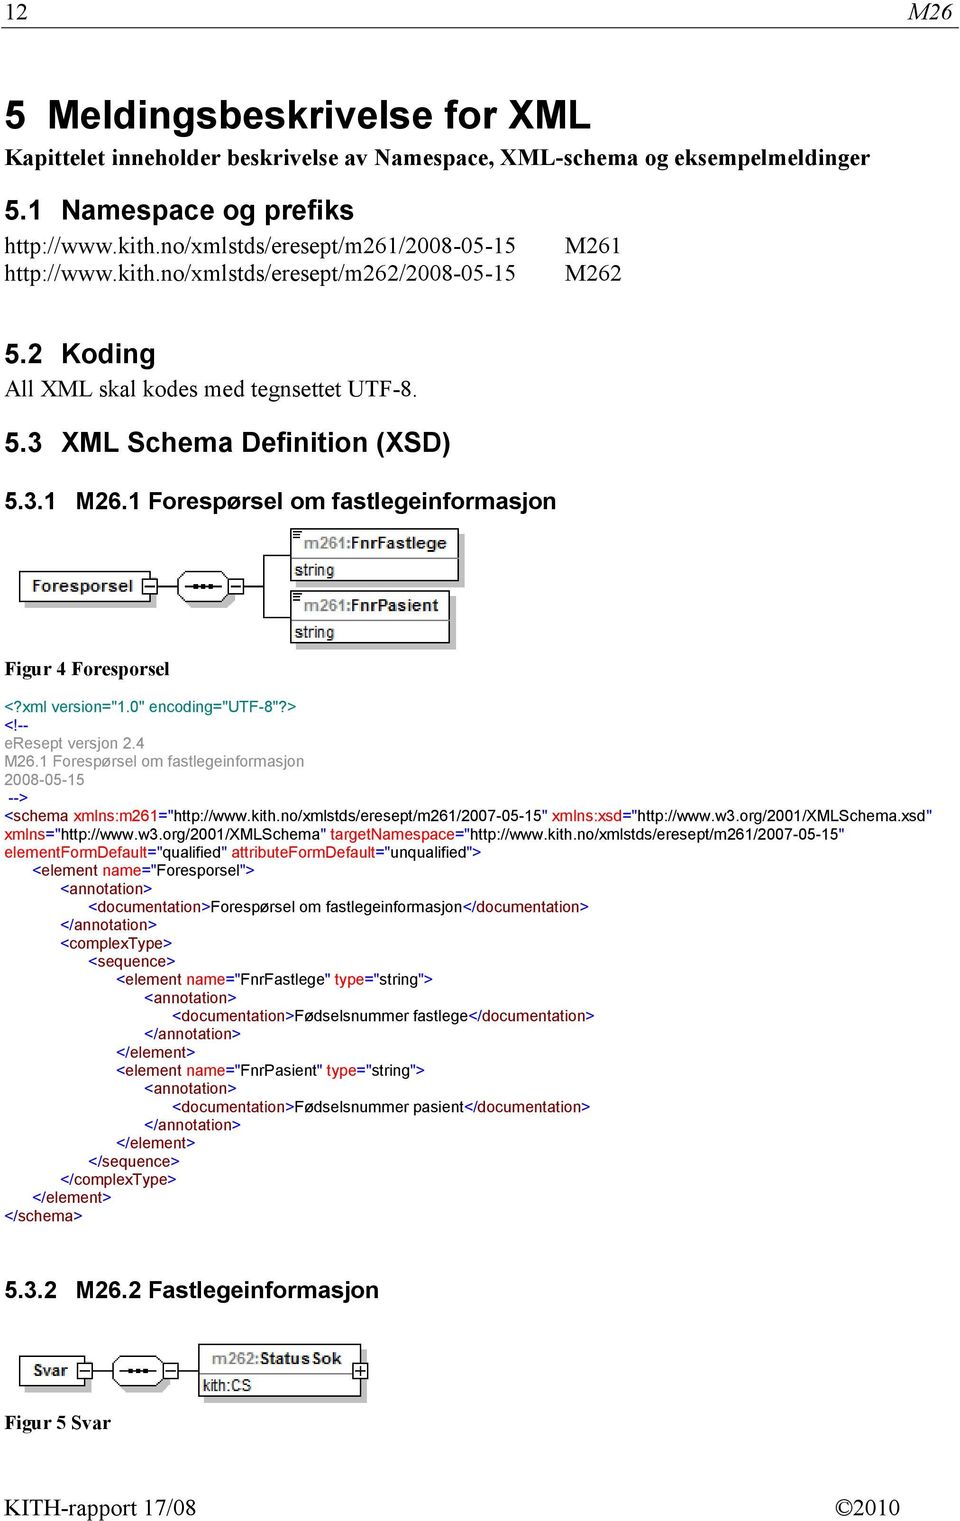 xml version="1.0" encoding="utf-8"?> <!-- eresept versjon 2.4 M26.1 Forespørsel om fastlegeinformasjon 2008-05-15 --> <schema xmlns:m261="http://www.kith.